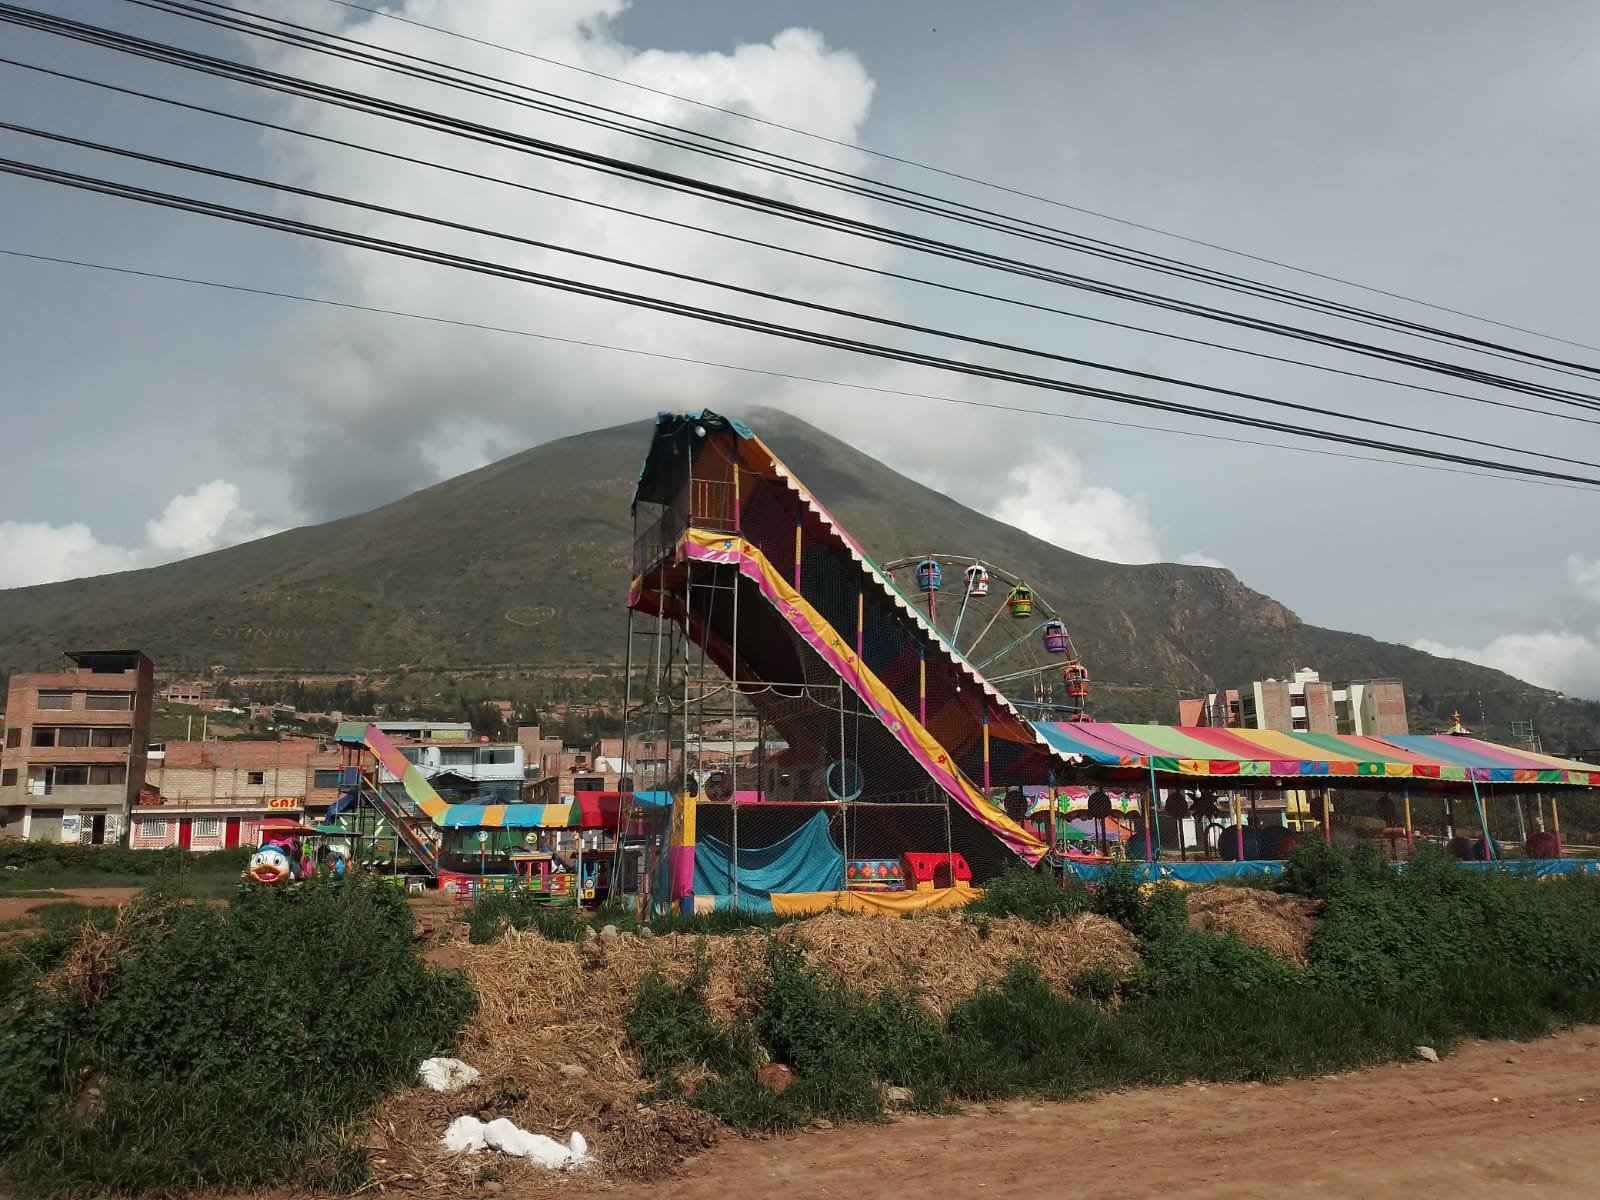 Juegos mecánicos que funcionan en el campo Juan Velasco de Cayhuayna desde hace un año, no tiene autorización municipal